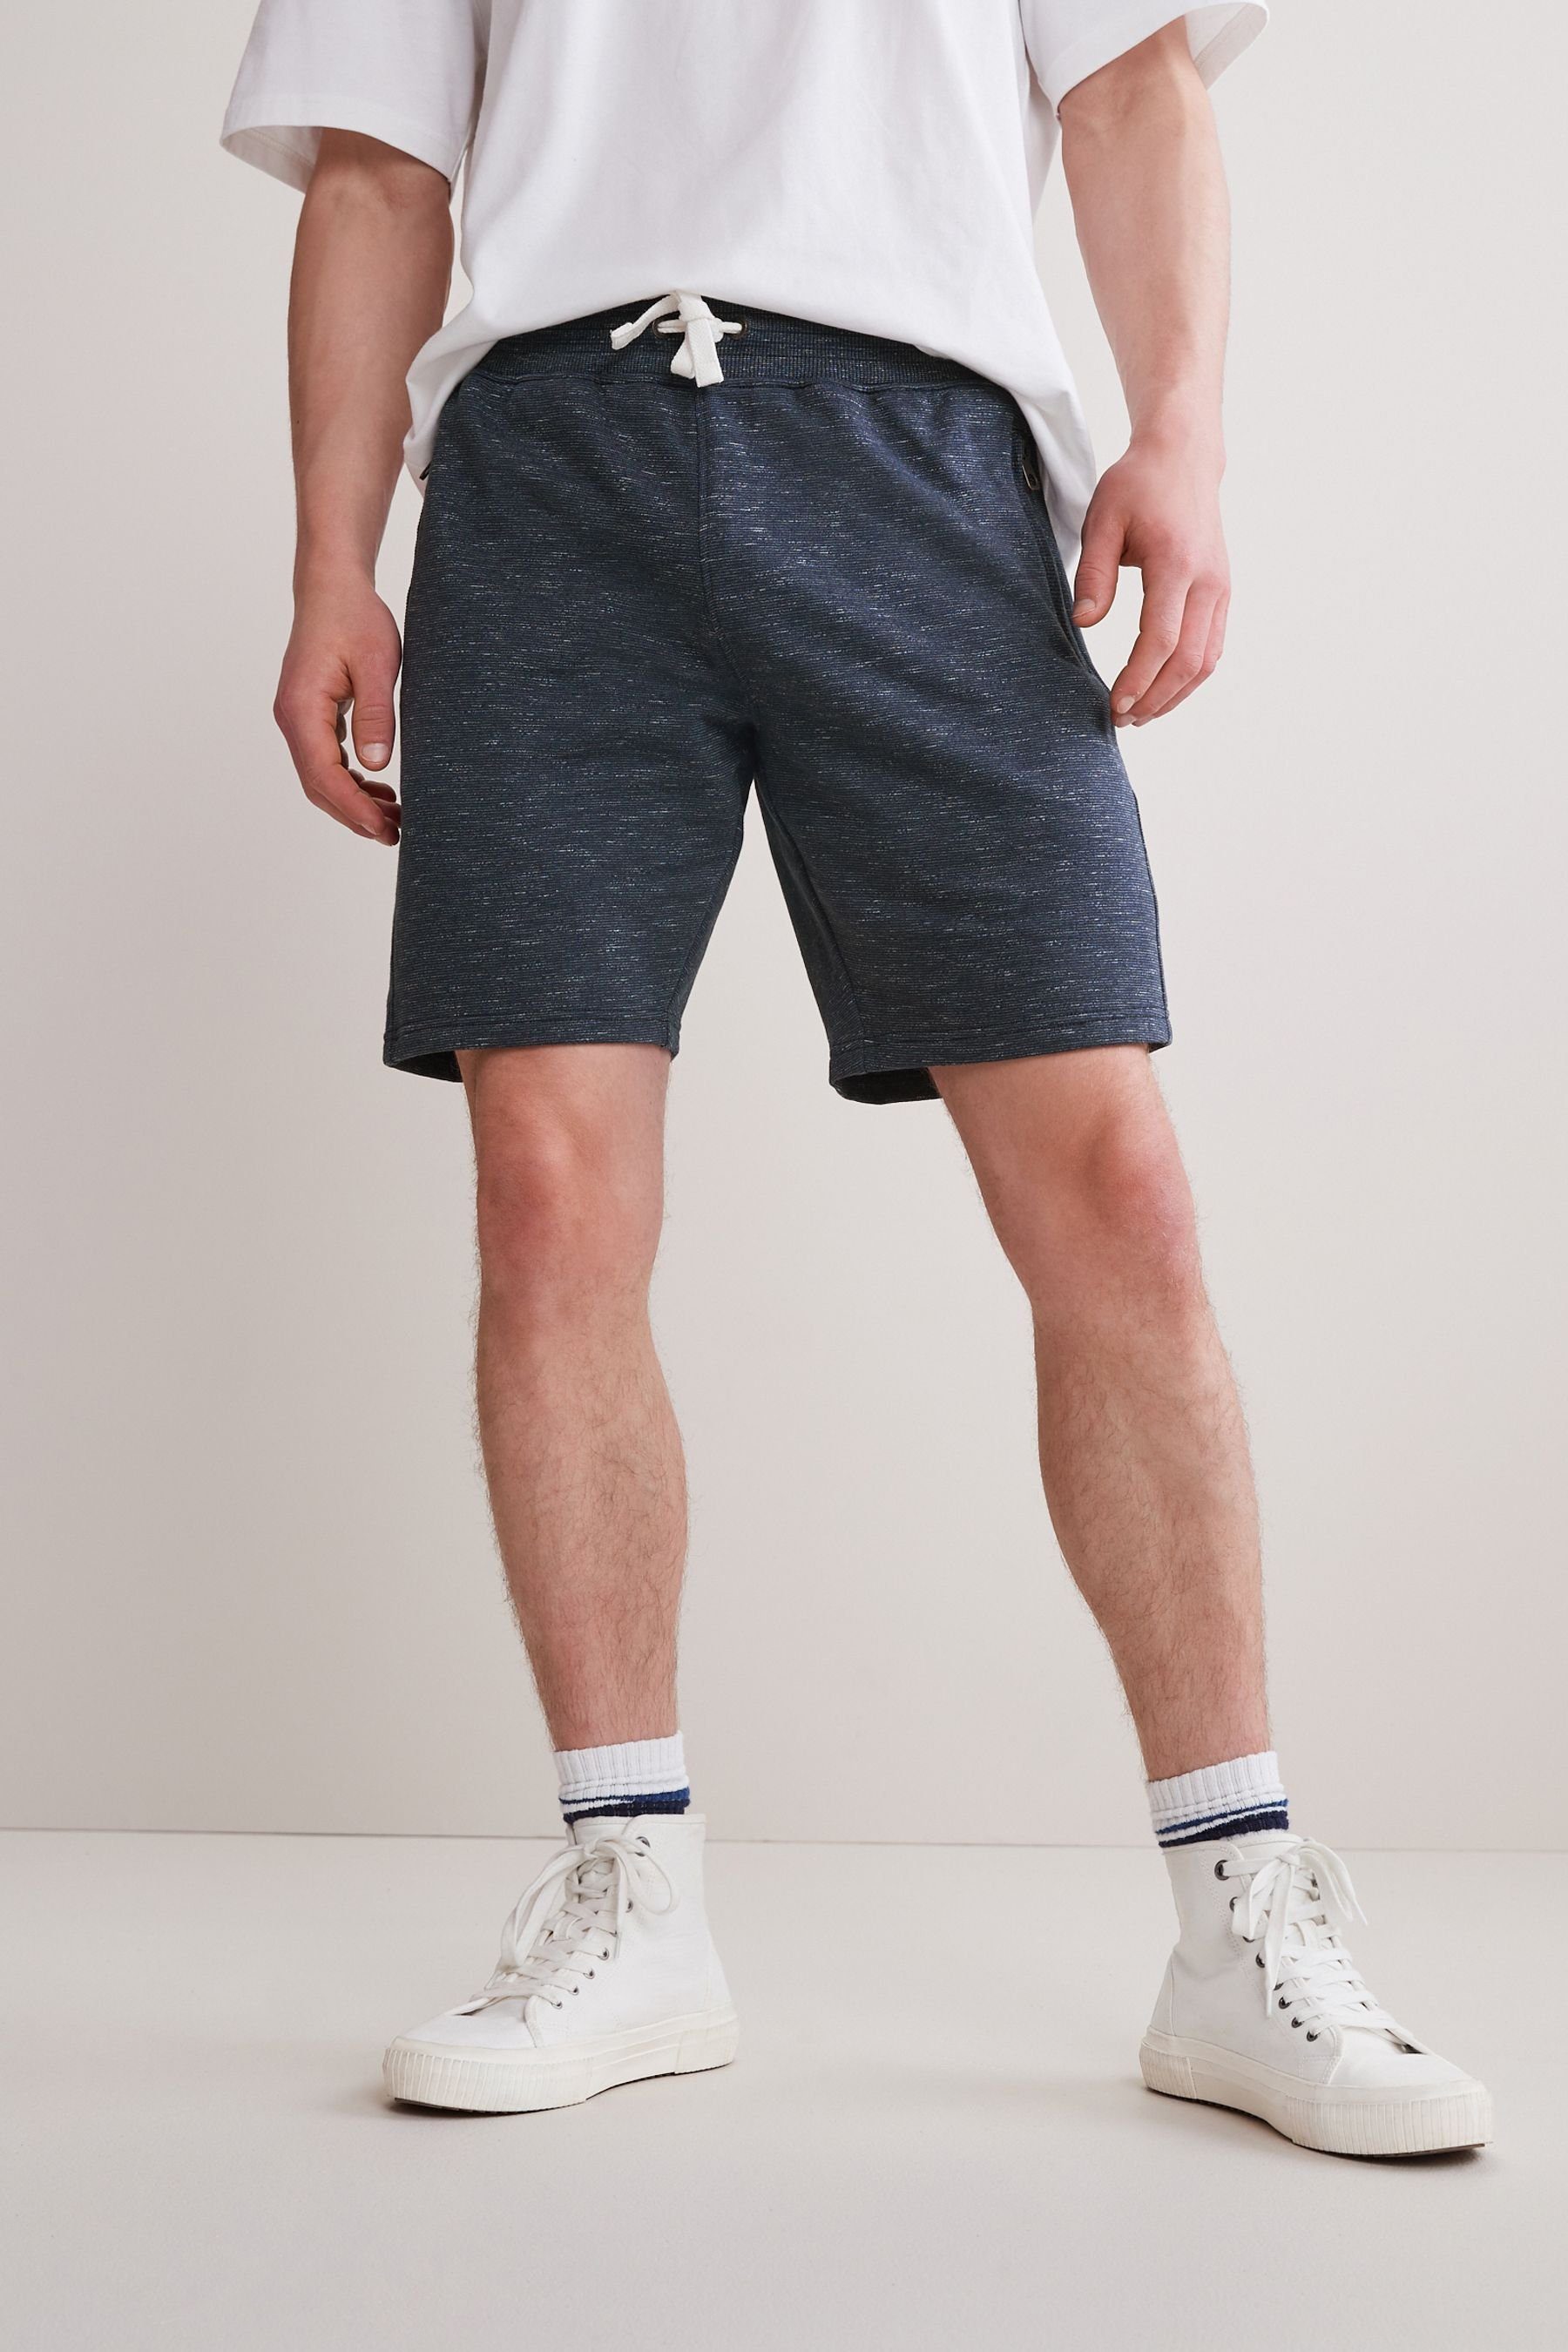 Herren Kurze Hosen Next Shorts Melierte Jersey-Shorts mit Reißverschlusstaschen